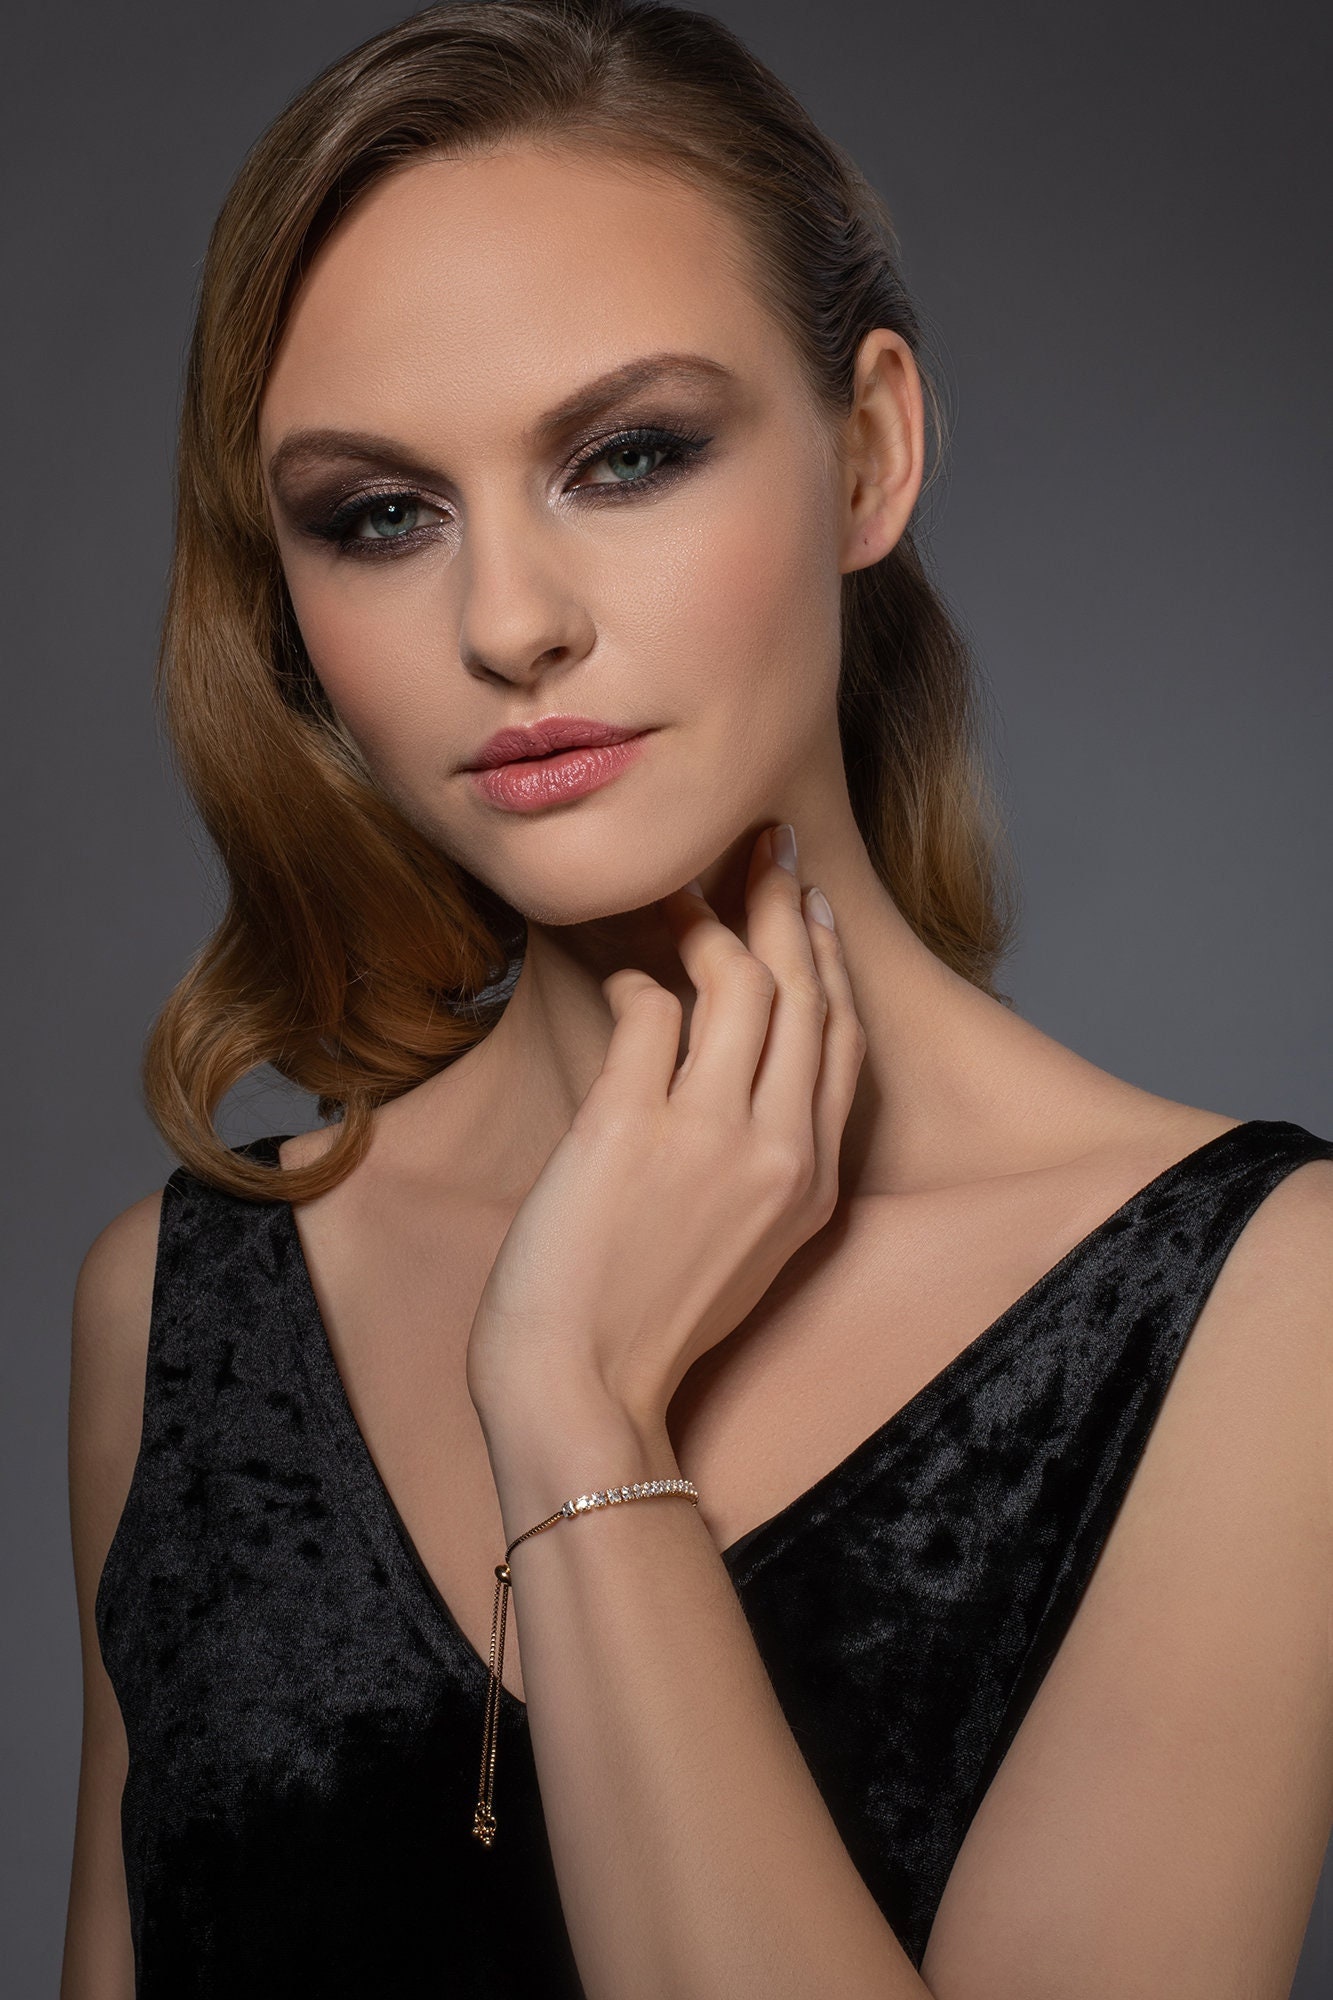 Adjustable Rose Gold Bracelet for Women and Teenage Girls, Rose